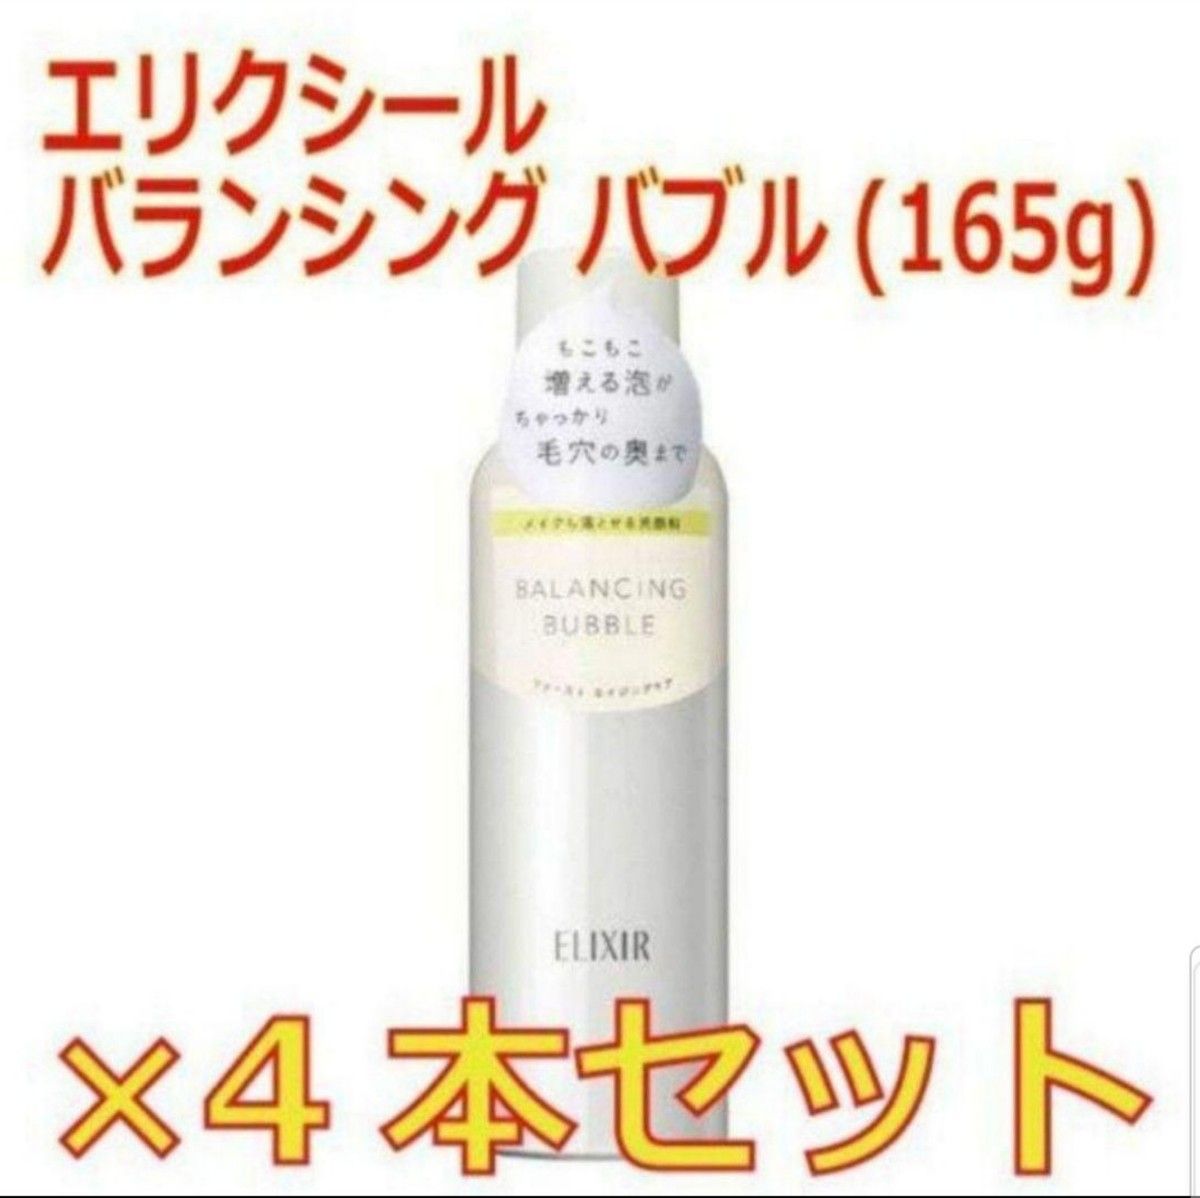 【4本セット】エリクシール バランシング バブル 泡状 洗顔料(165g)